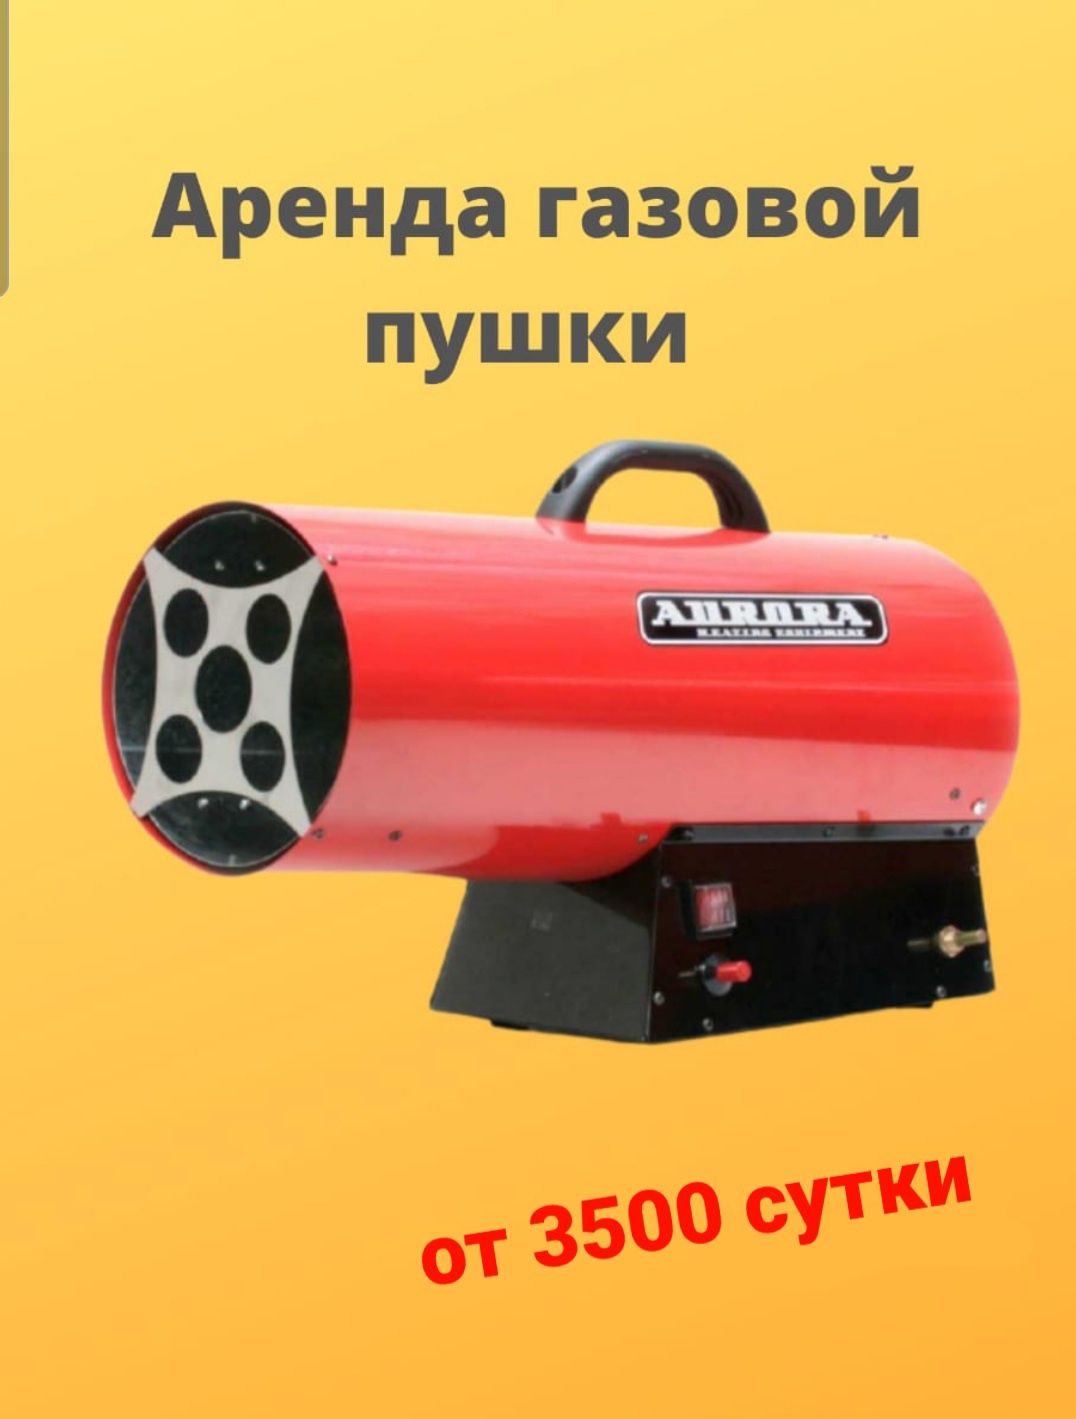 Прокат аренда инструмент пушка газовая электрическая дизельная